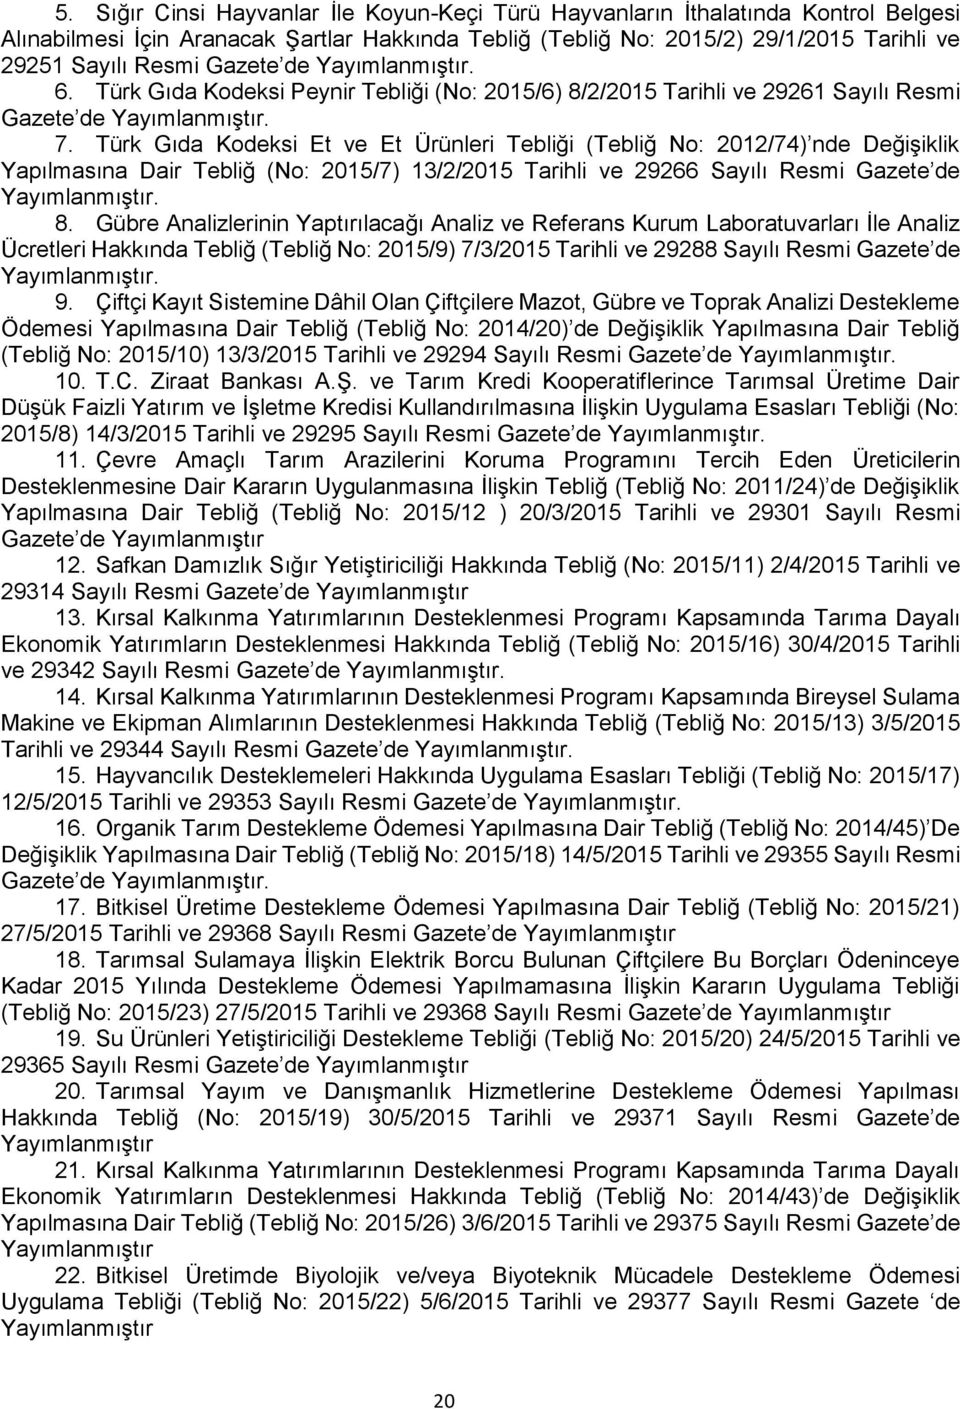 Türk Gıda Kodeksi Et ve Et Ürünleri Tebliği (Tebliğ No: 2012/74) nde Değişiklik Yapılmasına Dair Tebliğ (No: 2015/7) 13/2/2015 Tarihli ve 29266 Sayılı Resmi Gazete de Yayımlanmıştır. 8.